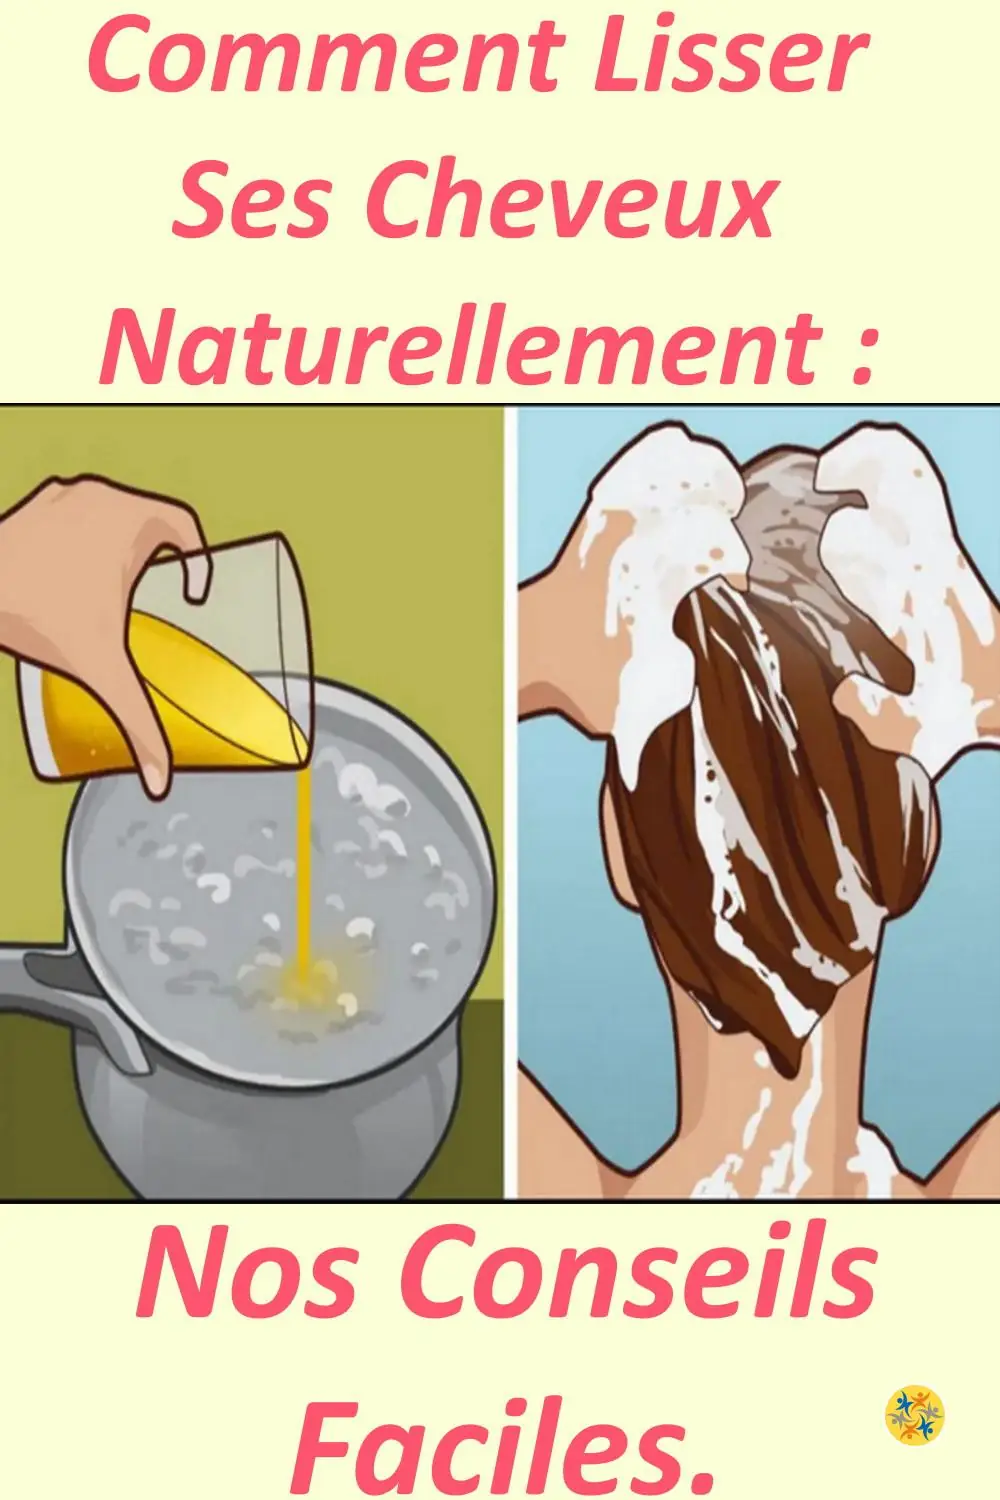 4 recettes pour faire un lissage naturel des cheveux 